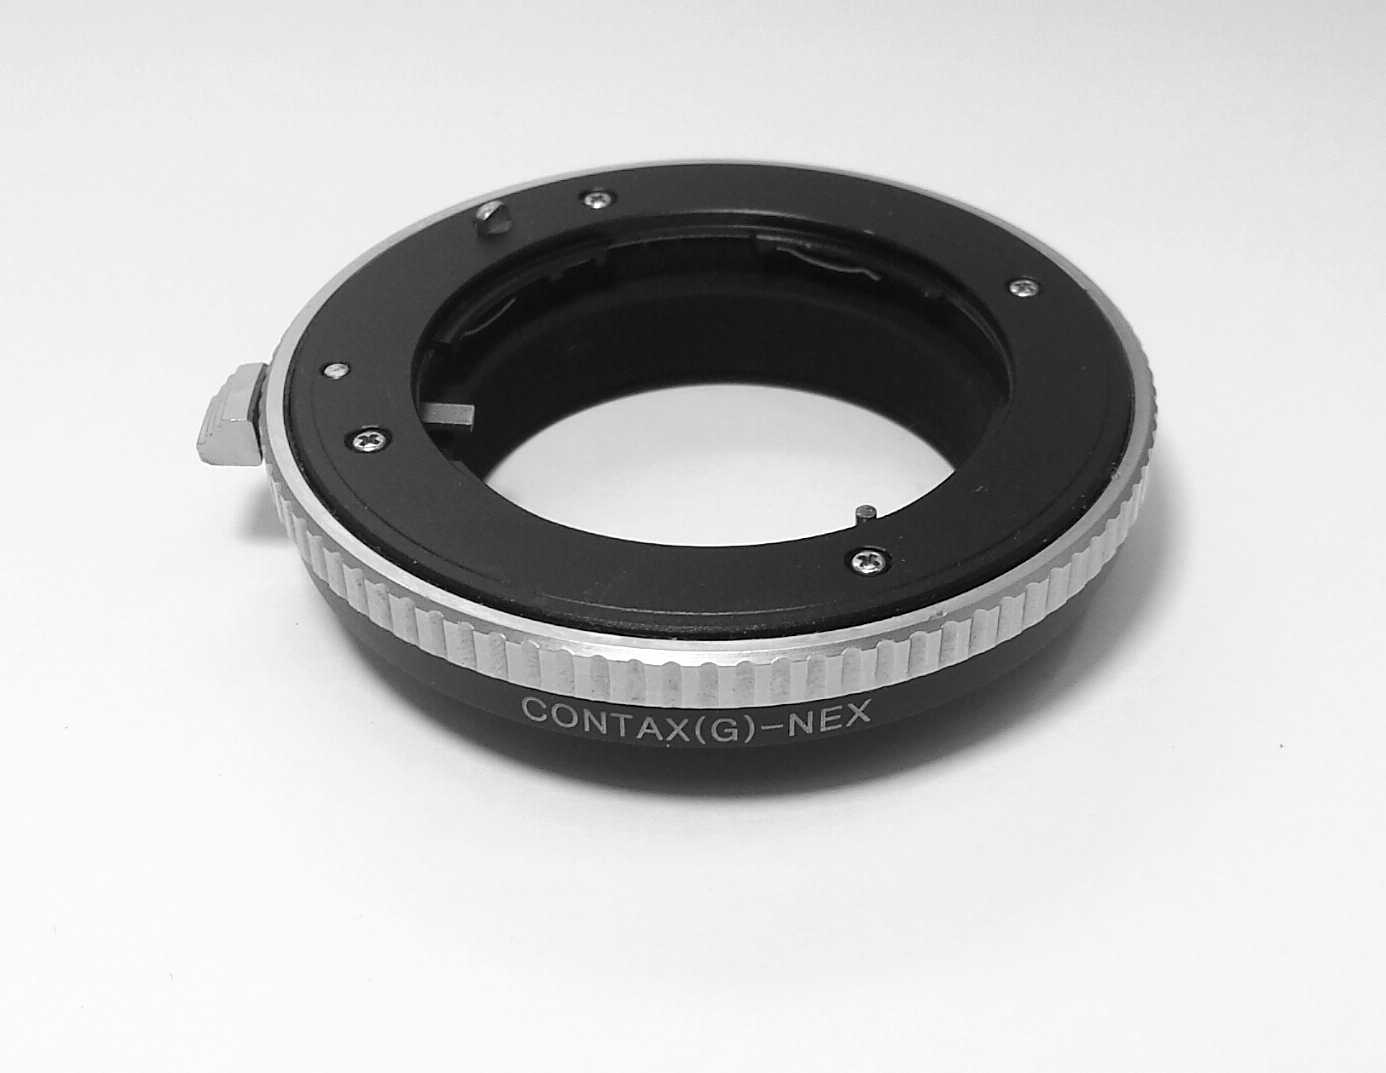 Contax G lens to Sony-NEX camera body adaptor sec. version